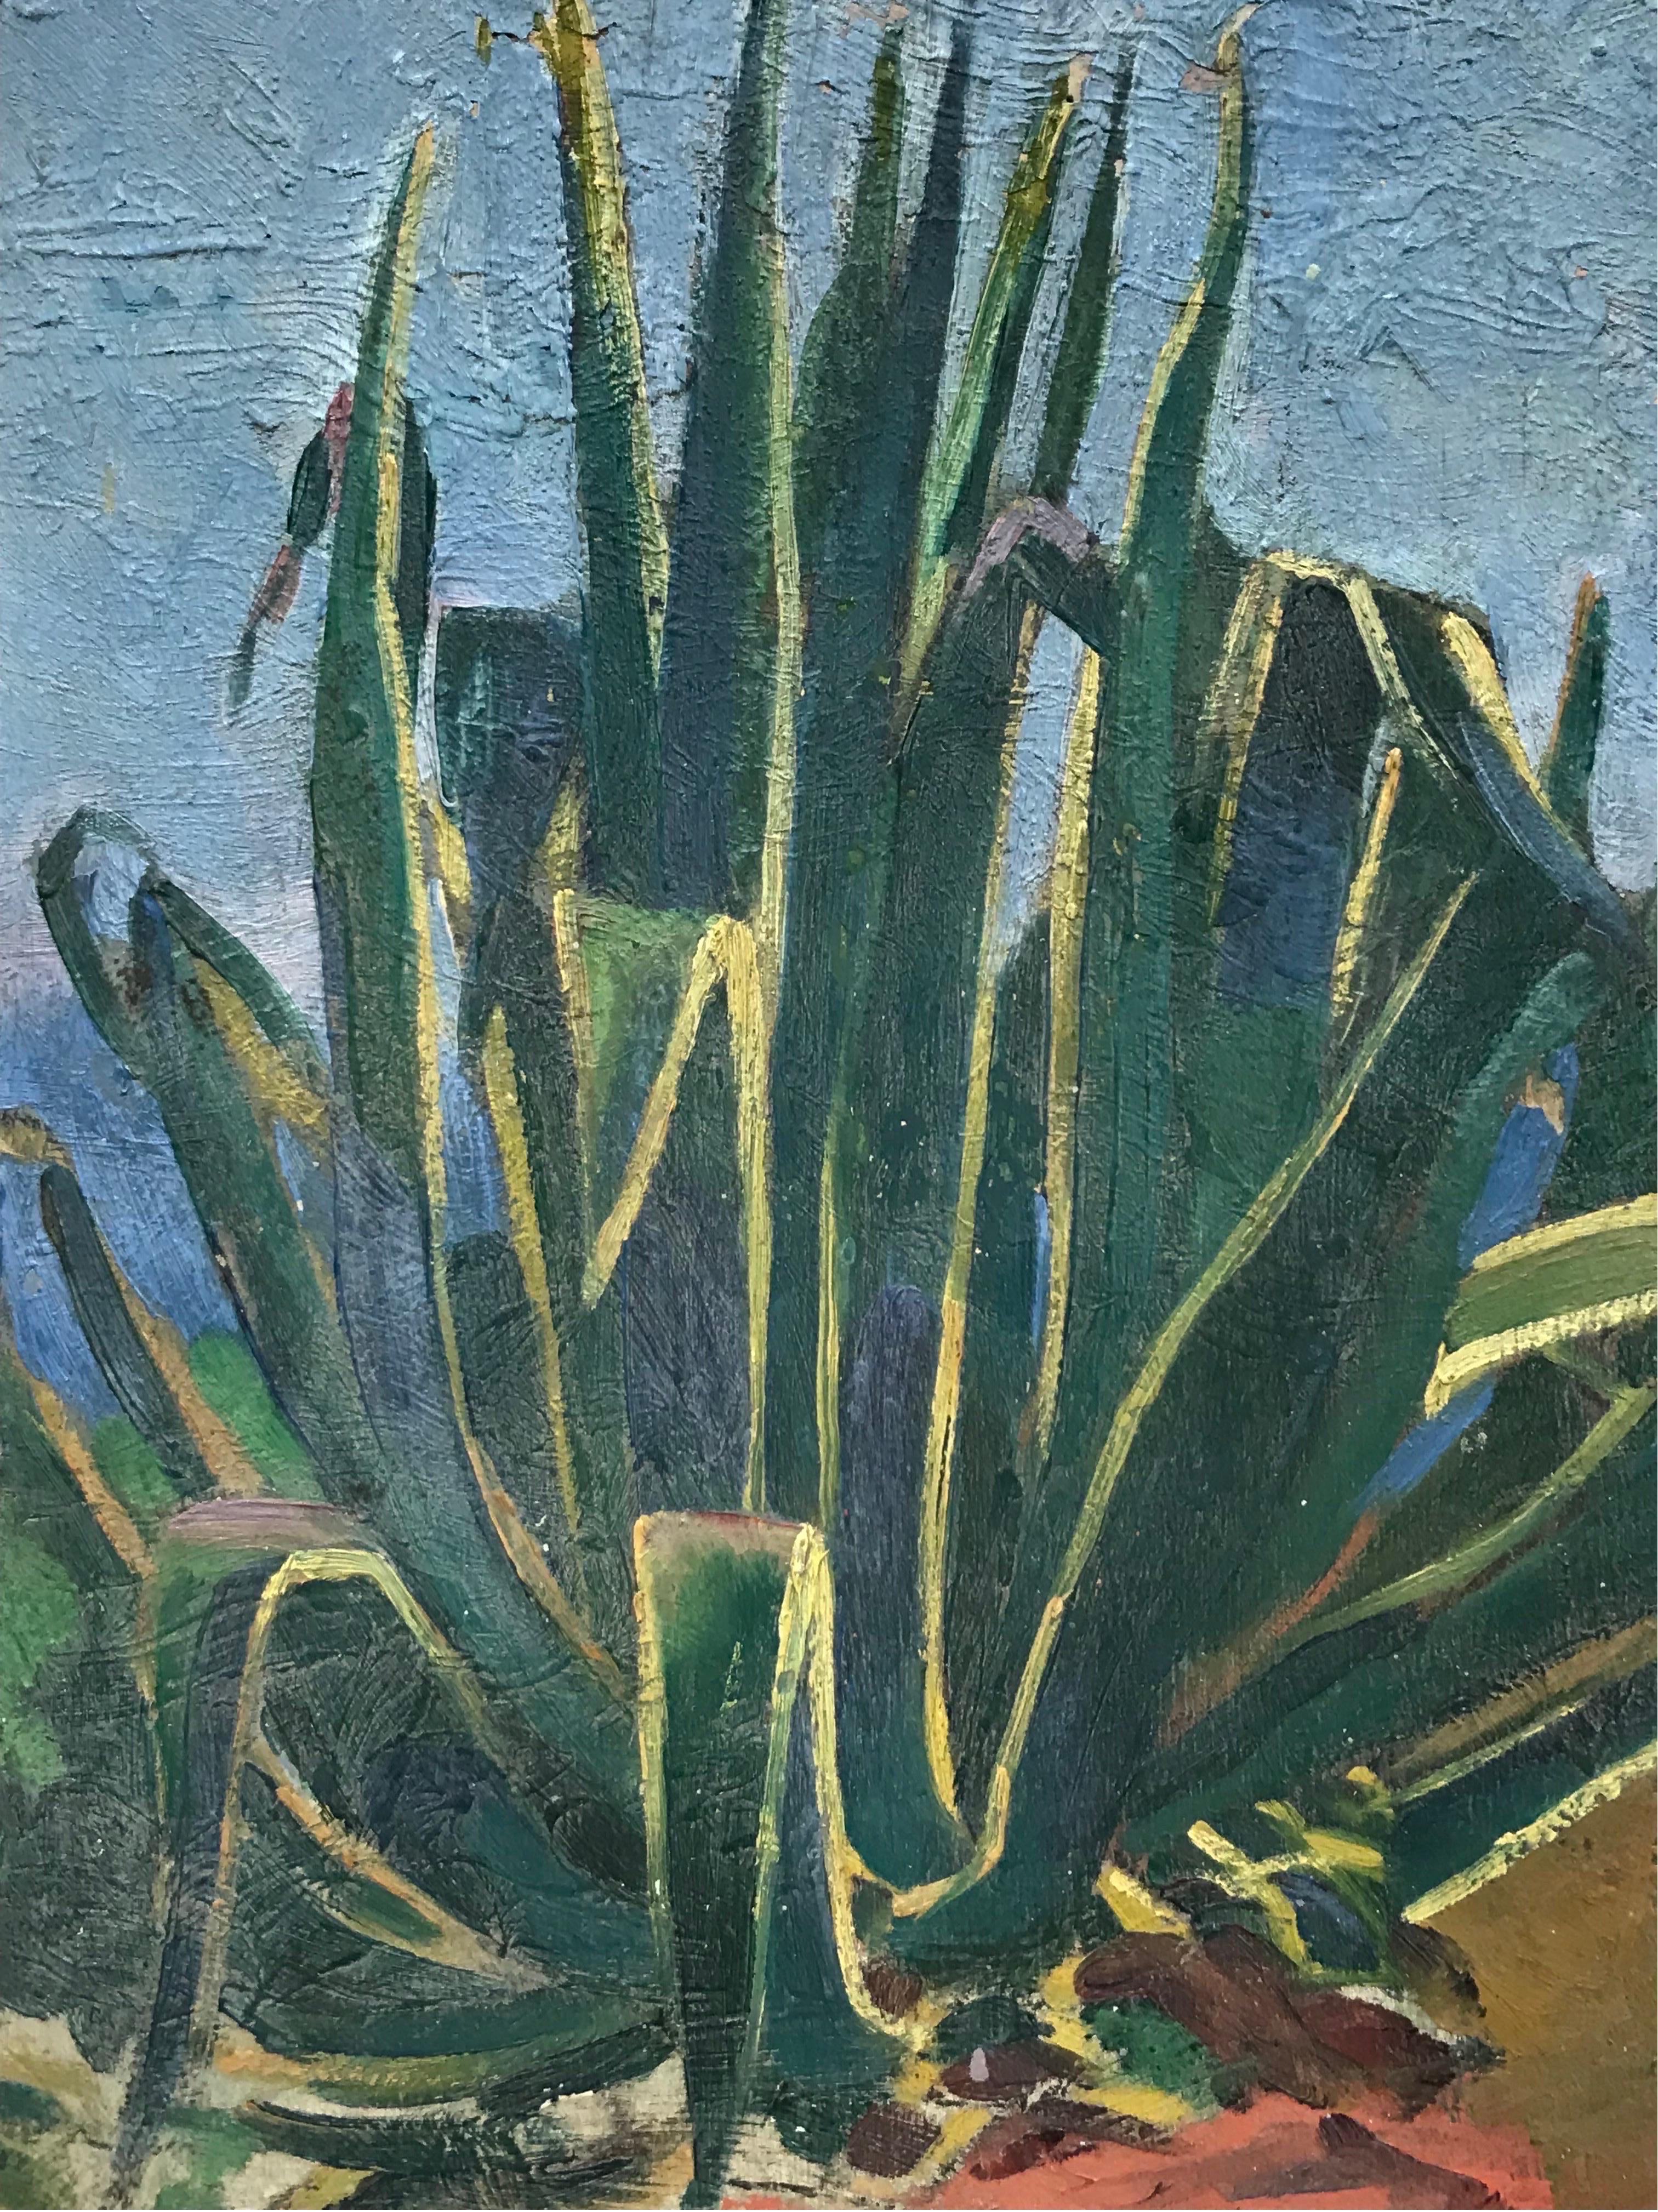 Künstler/Schule: Suzanne Crochet (Französin, um 1930), Künstlerin des französischen Impressionismus

Titel: Aloe Vera Pflanze wächst in der Wildnis

Medium: Öl auf Karton, ungerahmt 

pappe: 13 x 9,5 Zoll

Provenienz: Privatsammlung,